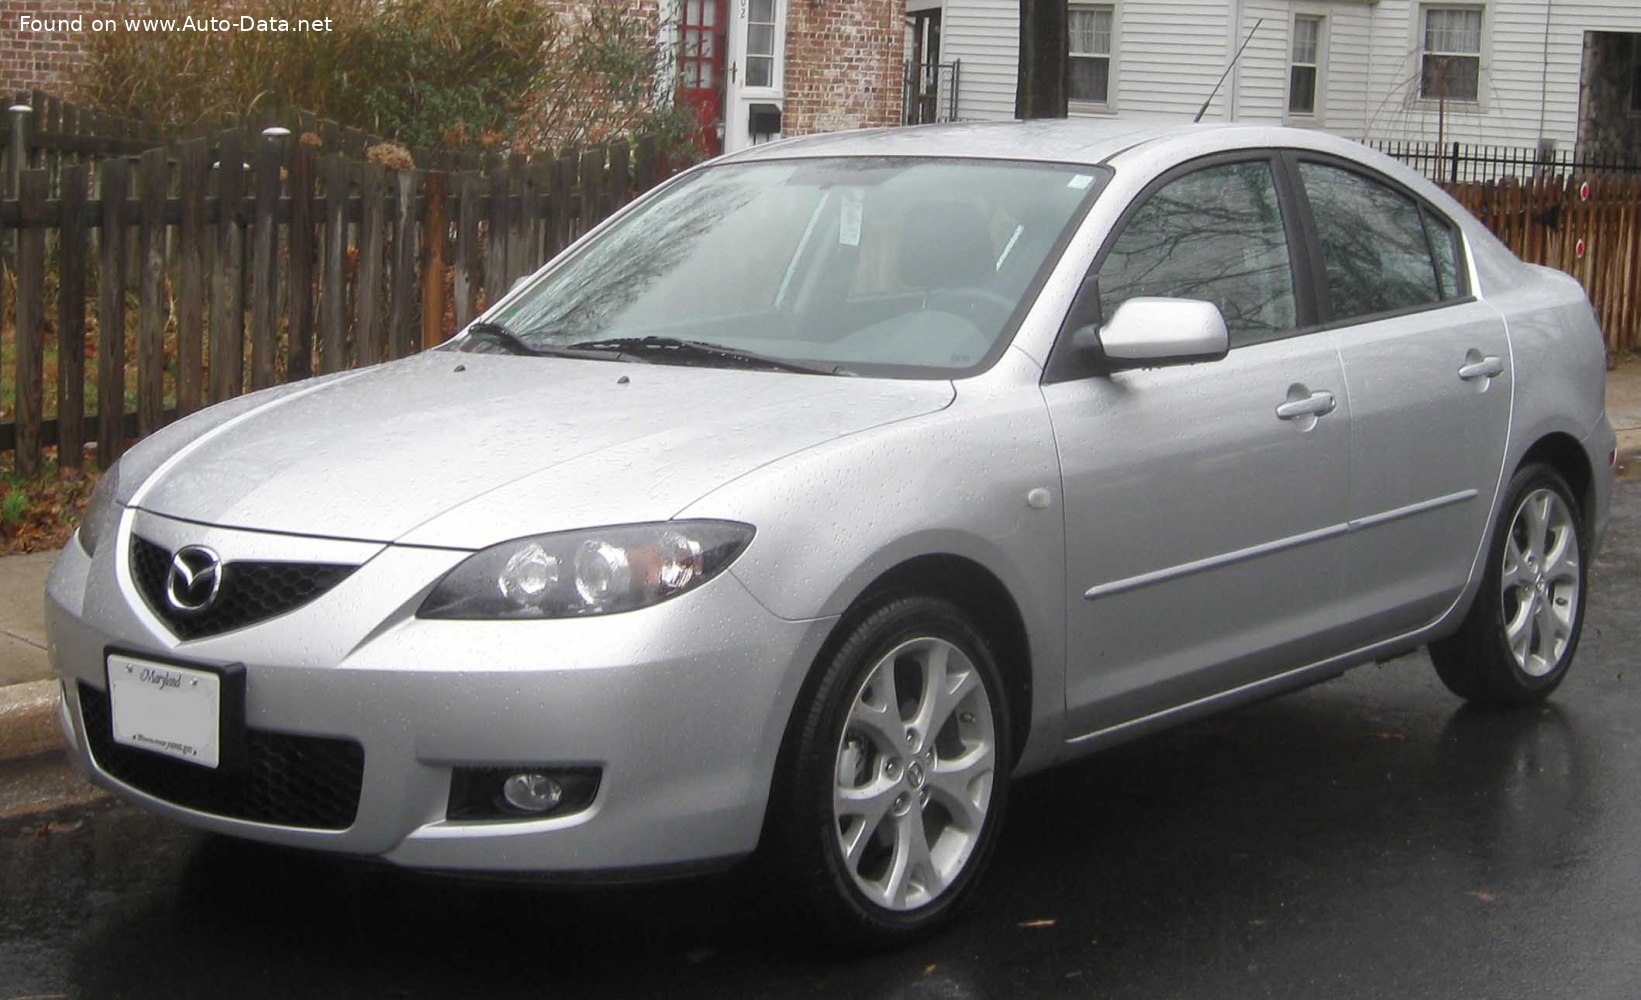 2006 Mazda 3 I Sedan (BK, facelift 2006) 1.6i (105 PS